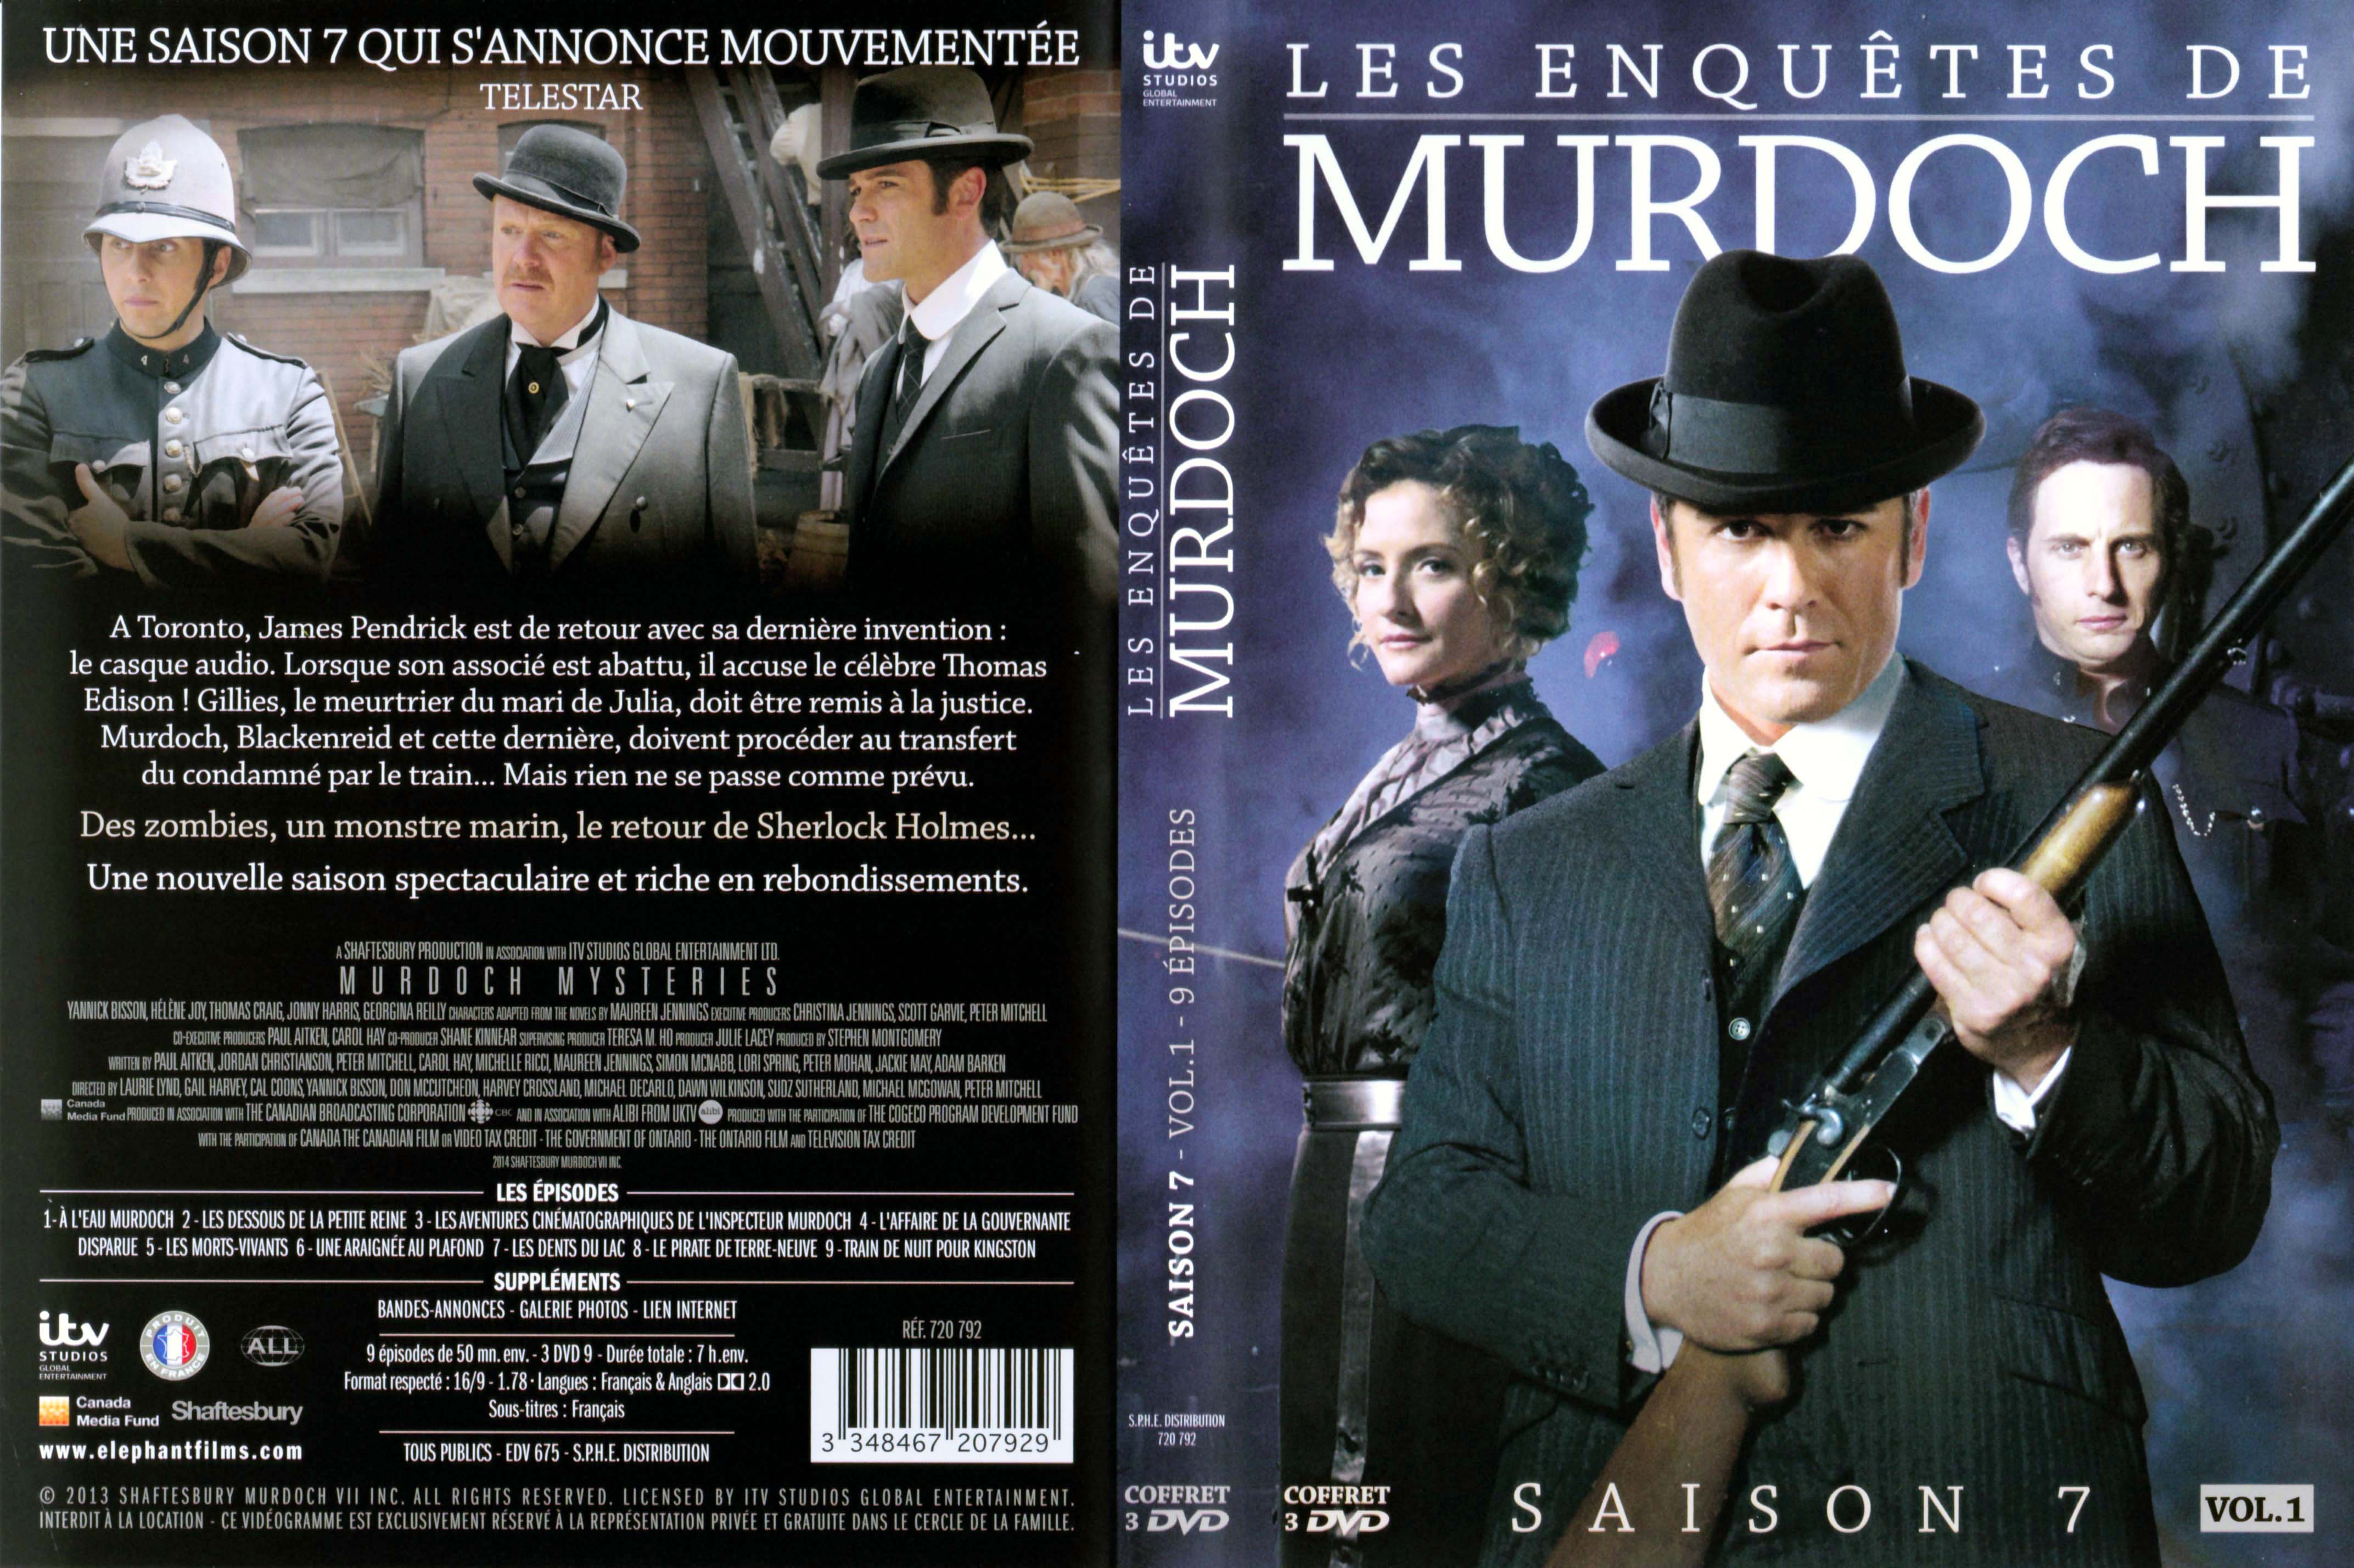 Jaquette DVD Les enqutes de Murdoch Saison 7 Vol 1